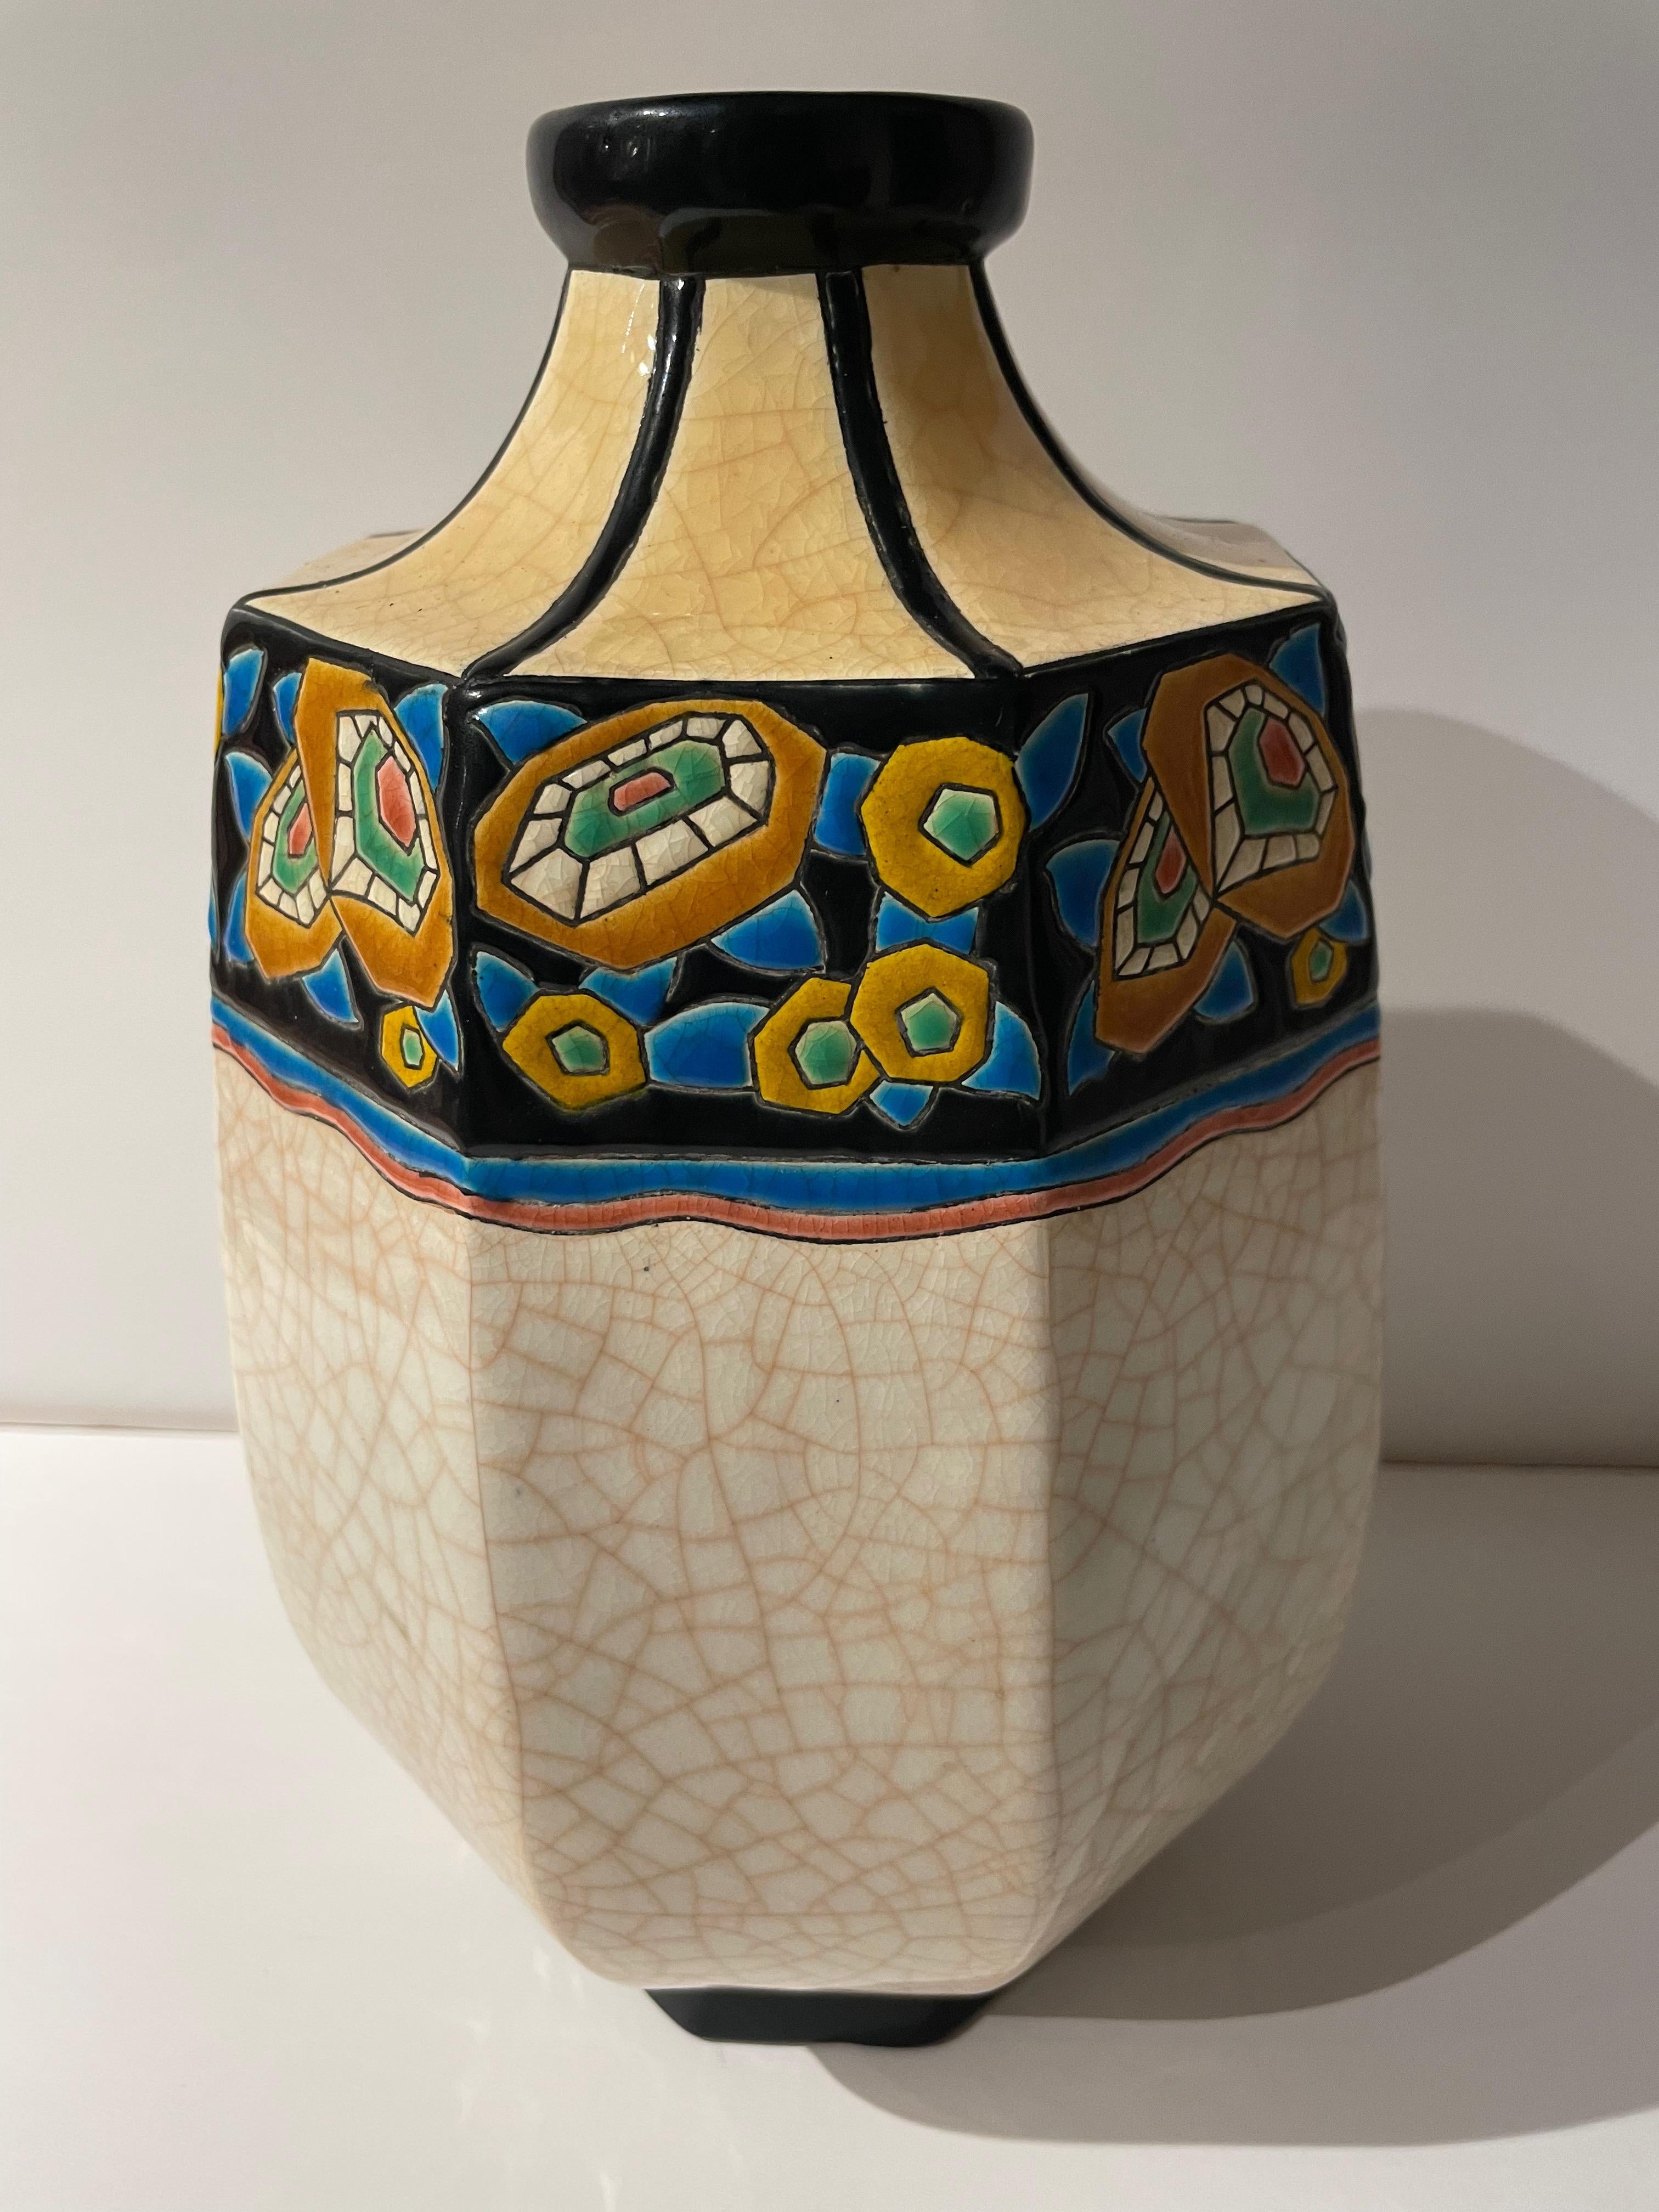 Vase Art déco de Longwy, France. Cette pièce est un excellent exemple des techniques de craquelure et de cloisonnement de la céramique. Sa forme octogonale présente huit panneaux décorés de fleurs géométriques stylisées.

Townes est le nom d'une